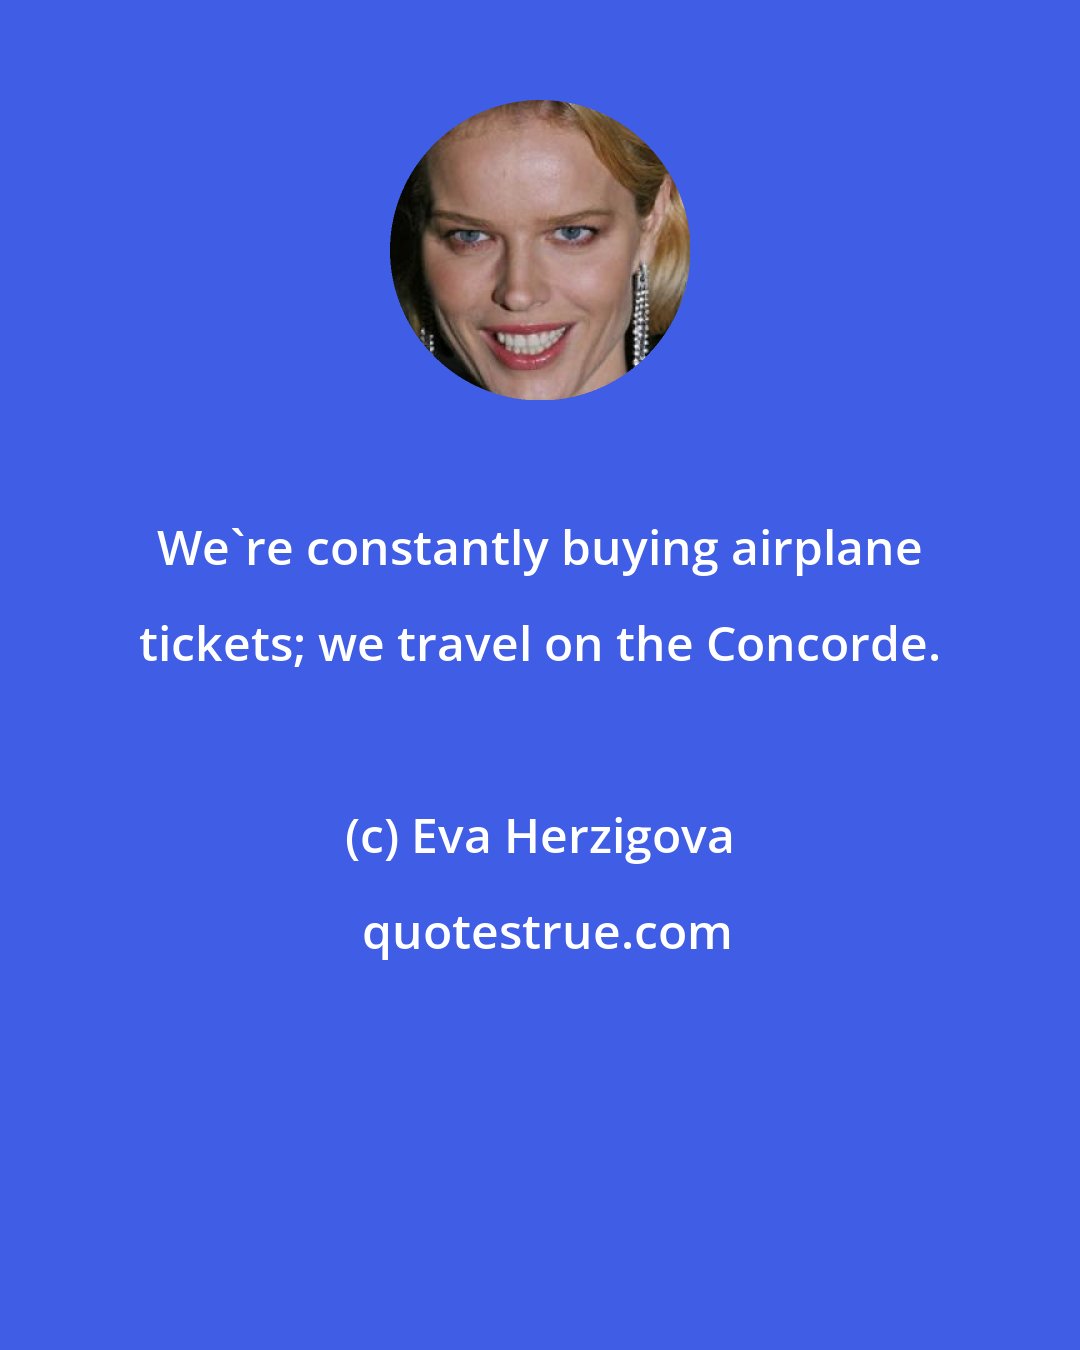 Eva Herzigova: We're constantly buying airplane tickets; we travel on the Concorde.